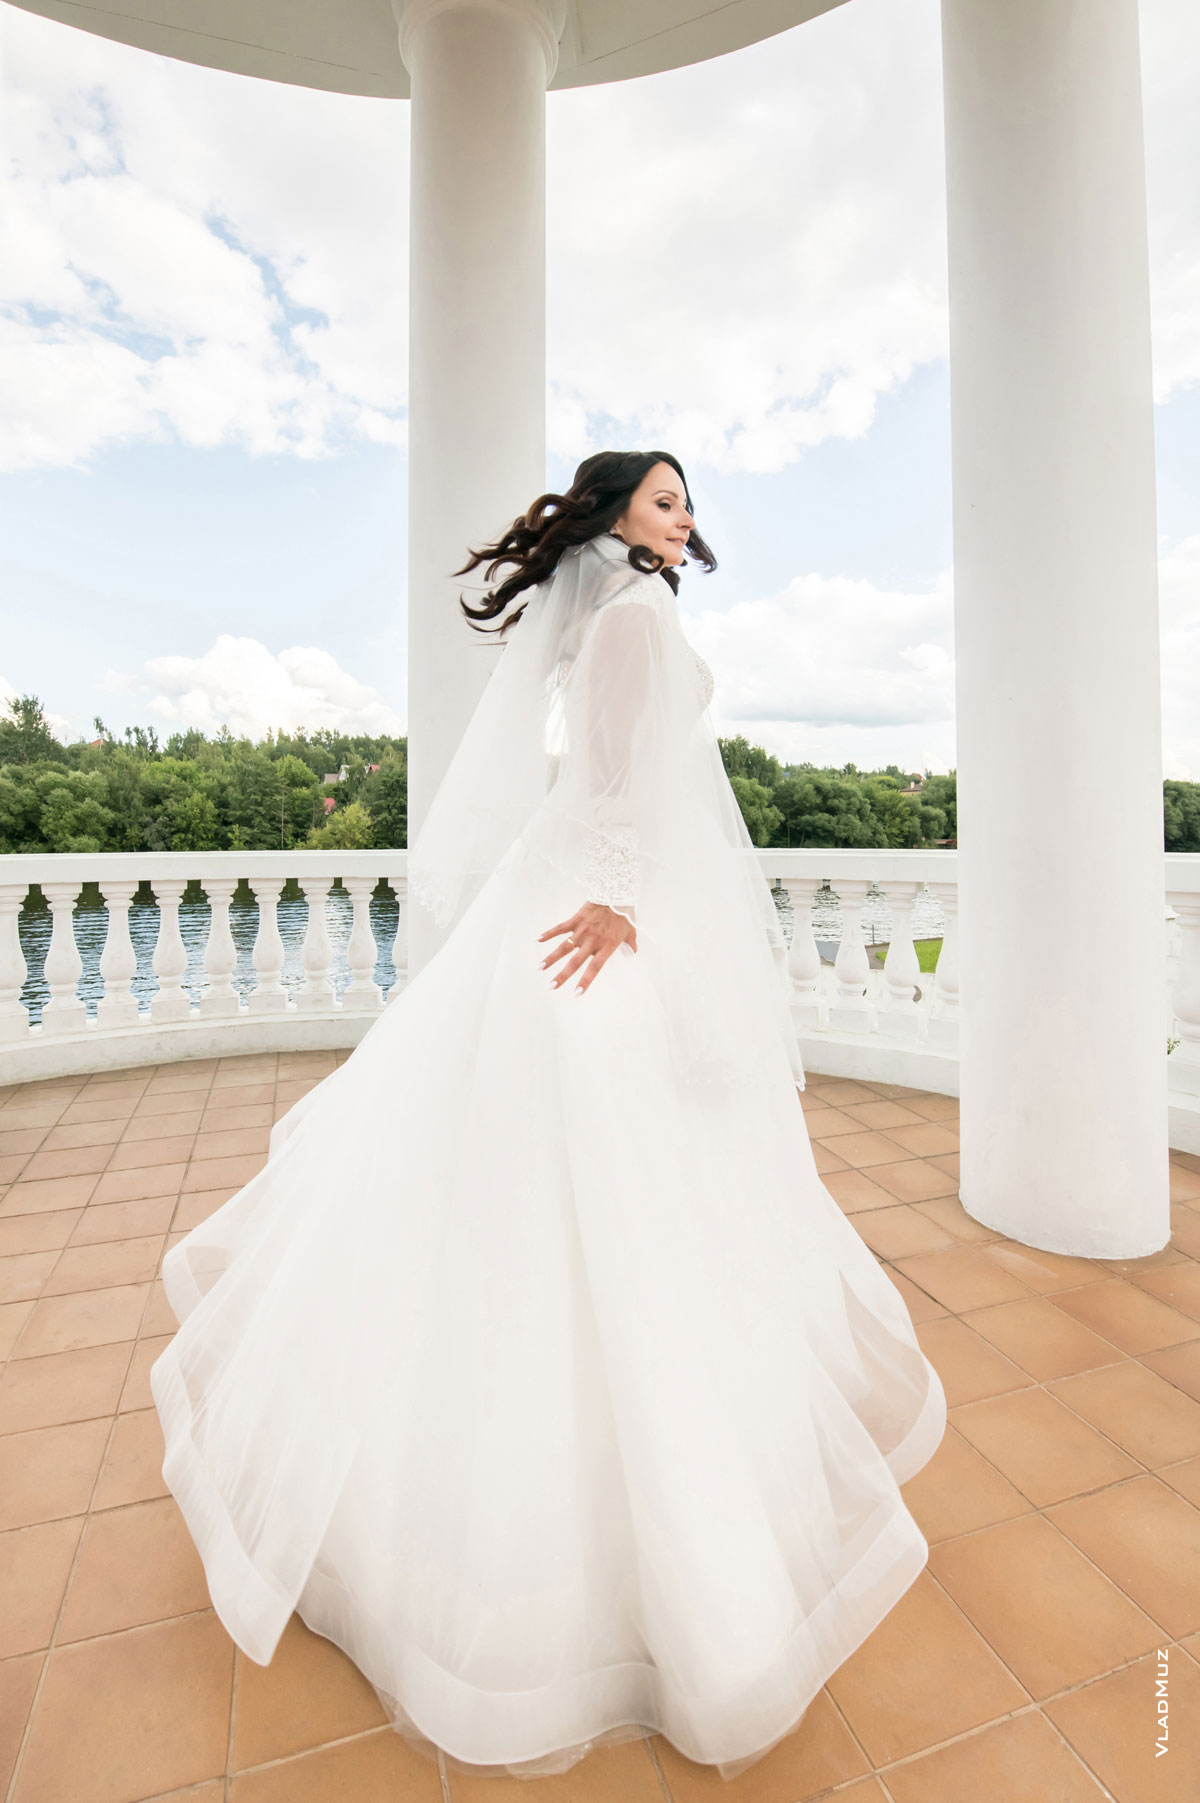 Фото невесты сделано с помощью Nikon 14-24mm f/2.8G